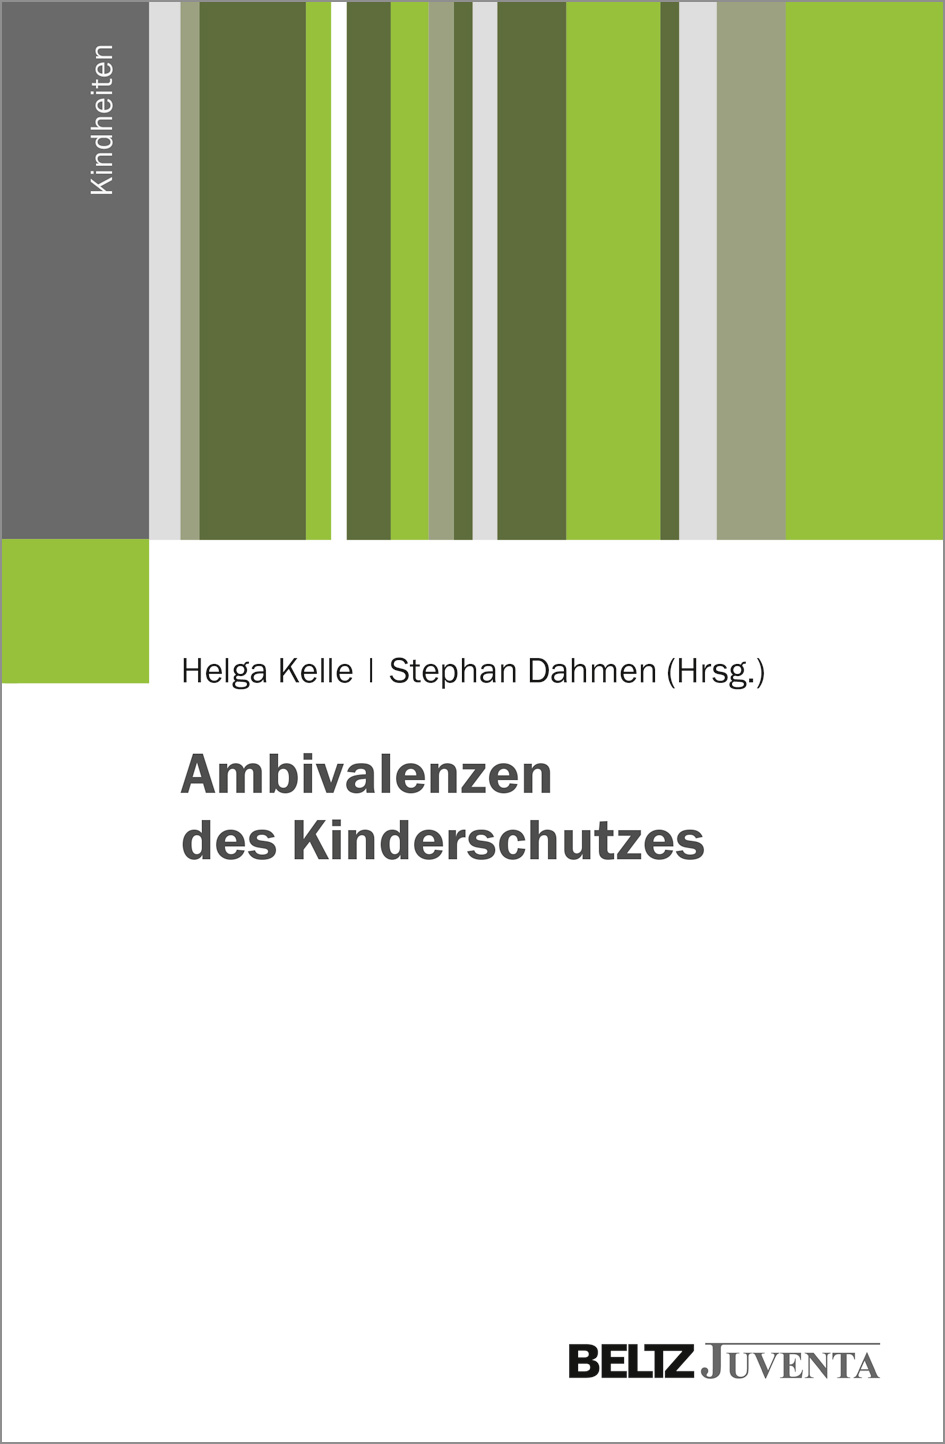 Cover des Sammelbandes "Ambivalenzen des Kinderschutzes", Helga Kelle und Stephan Dahmen (Hrsg.)